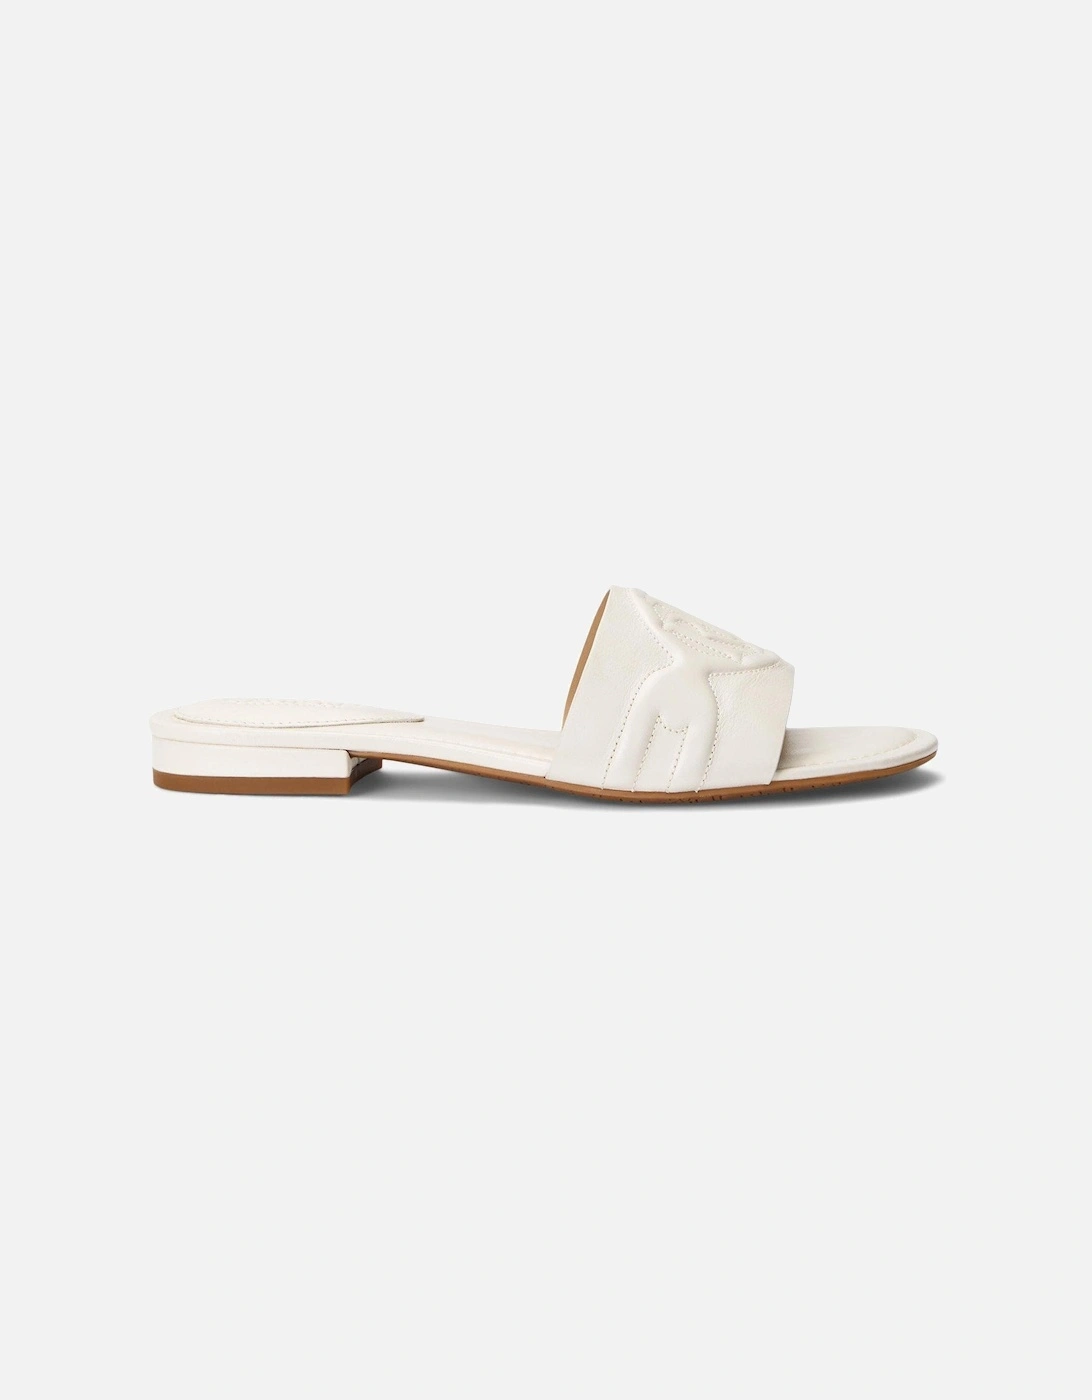 Alegra Sandals - White, 5 of 4